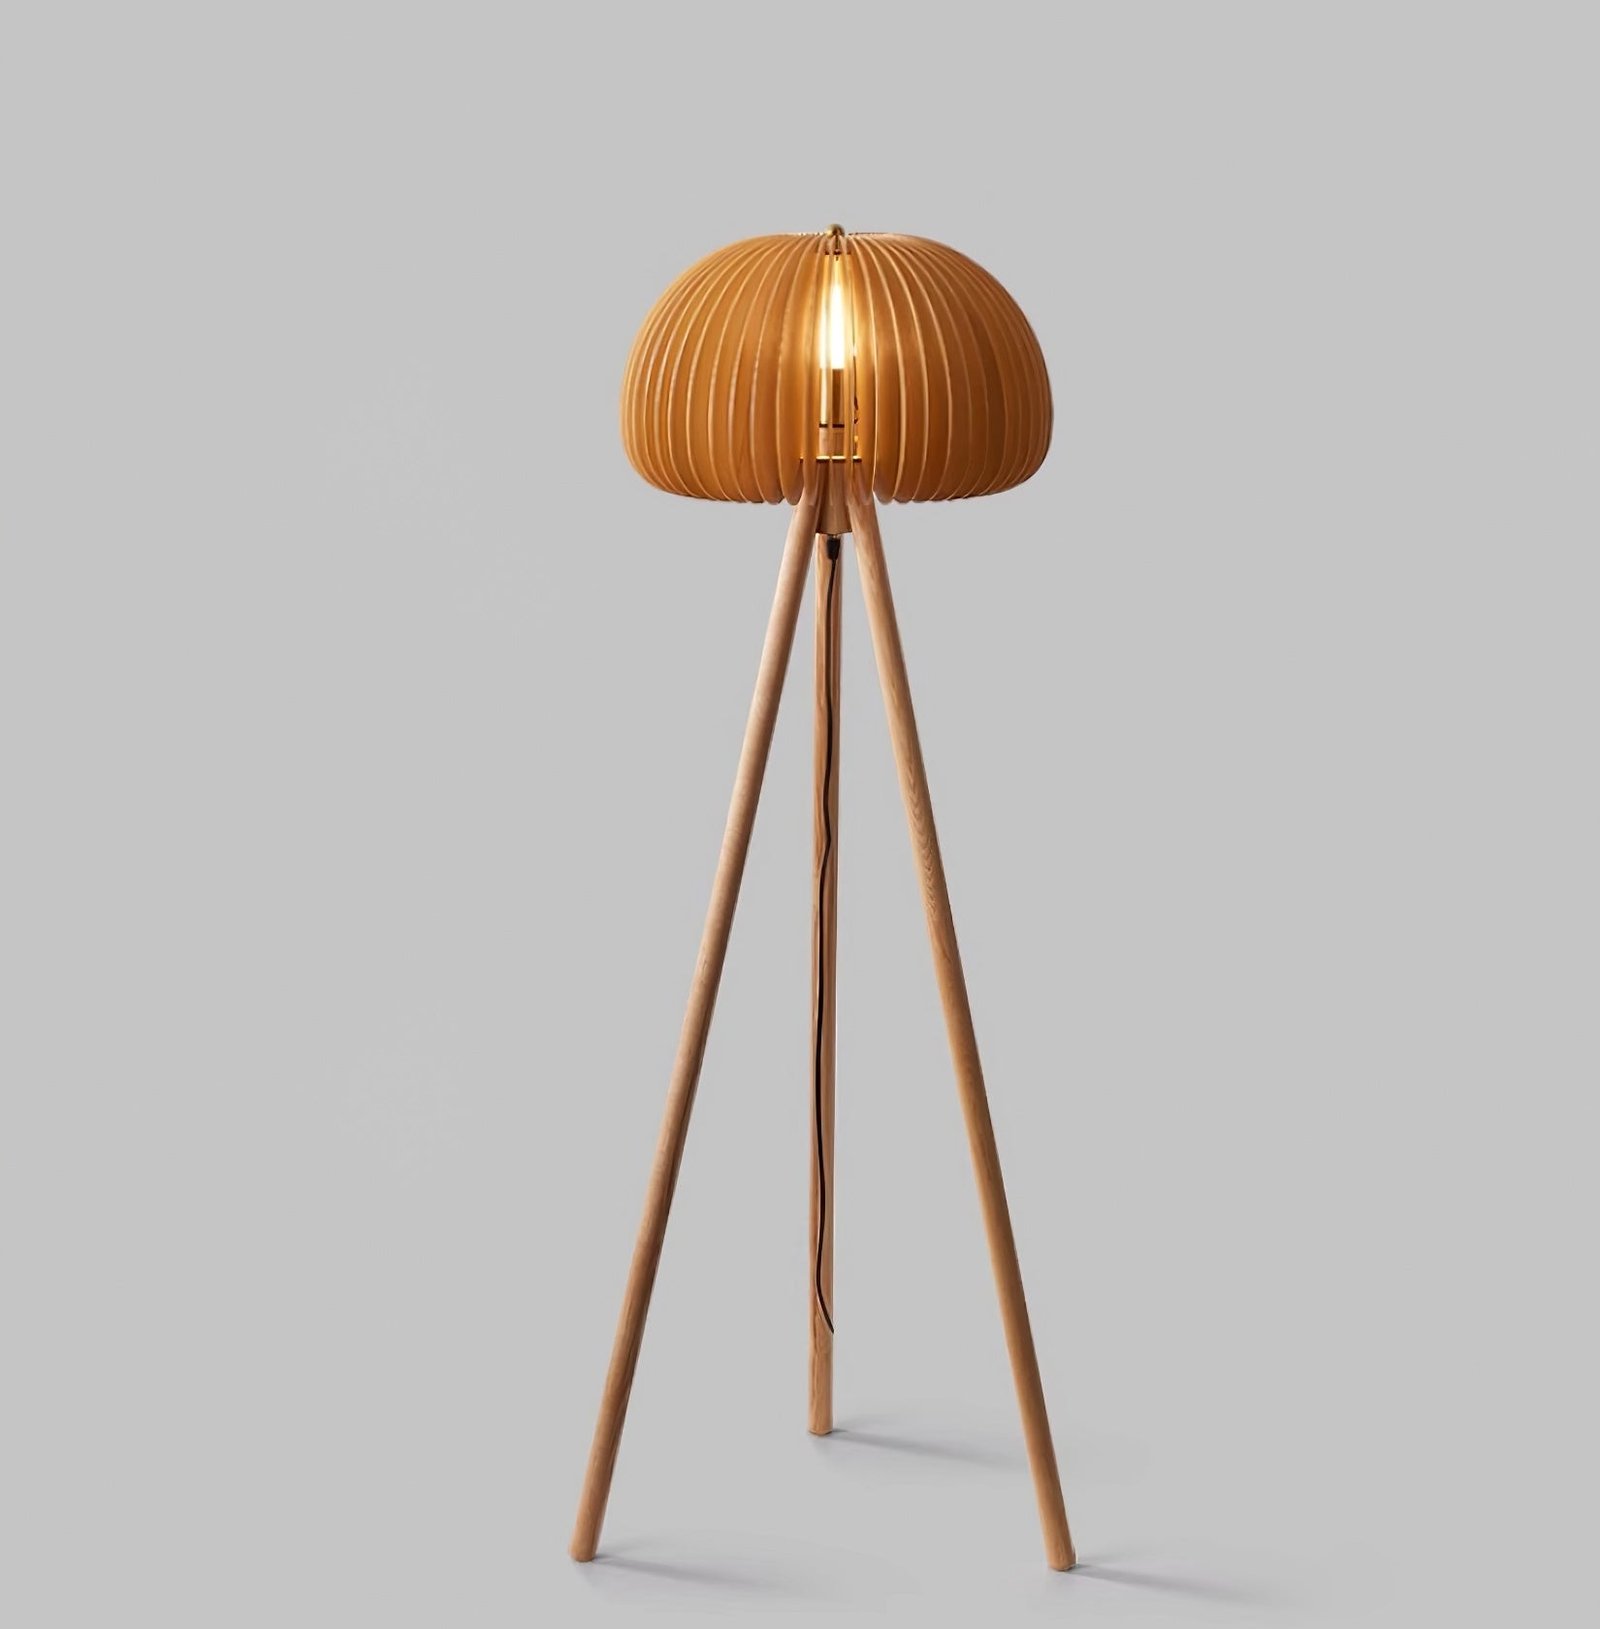 Wooden Floor Lamp with Pumpkin Design - 17.7" Diameter x 61" Height (45cm Dia x 155cm H) - Wooden Construction - UK Plug